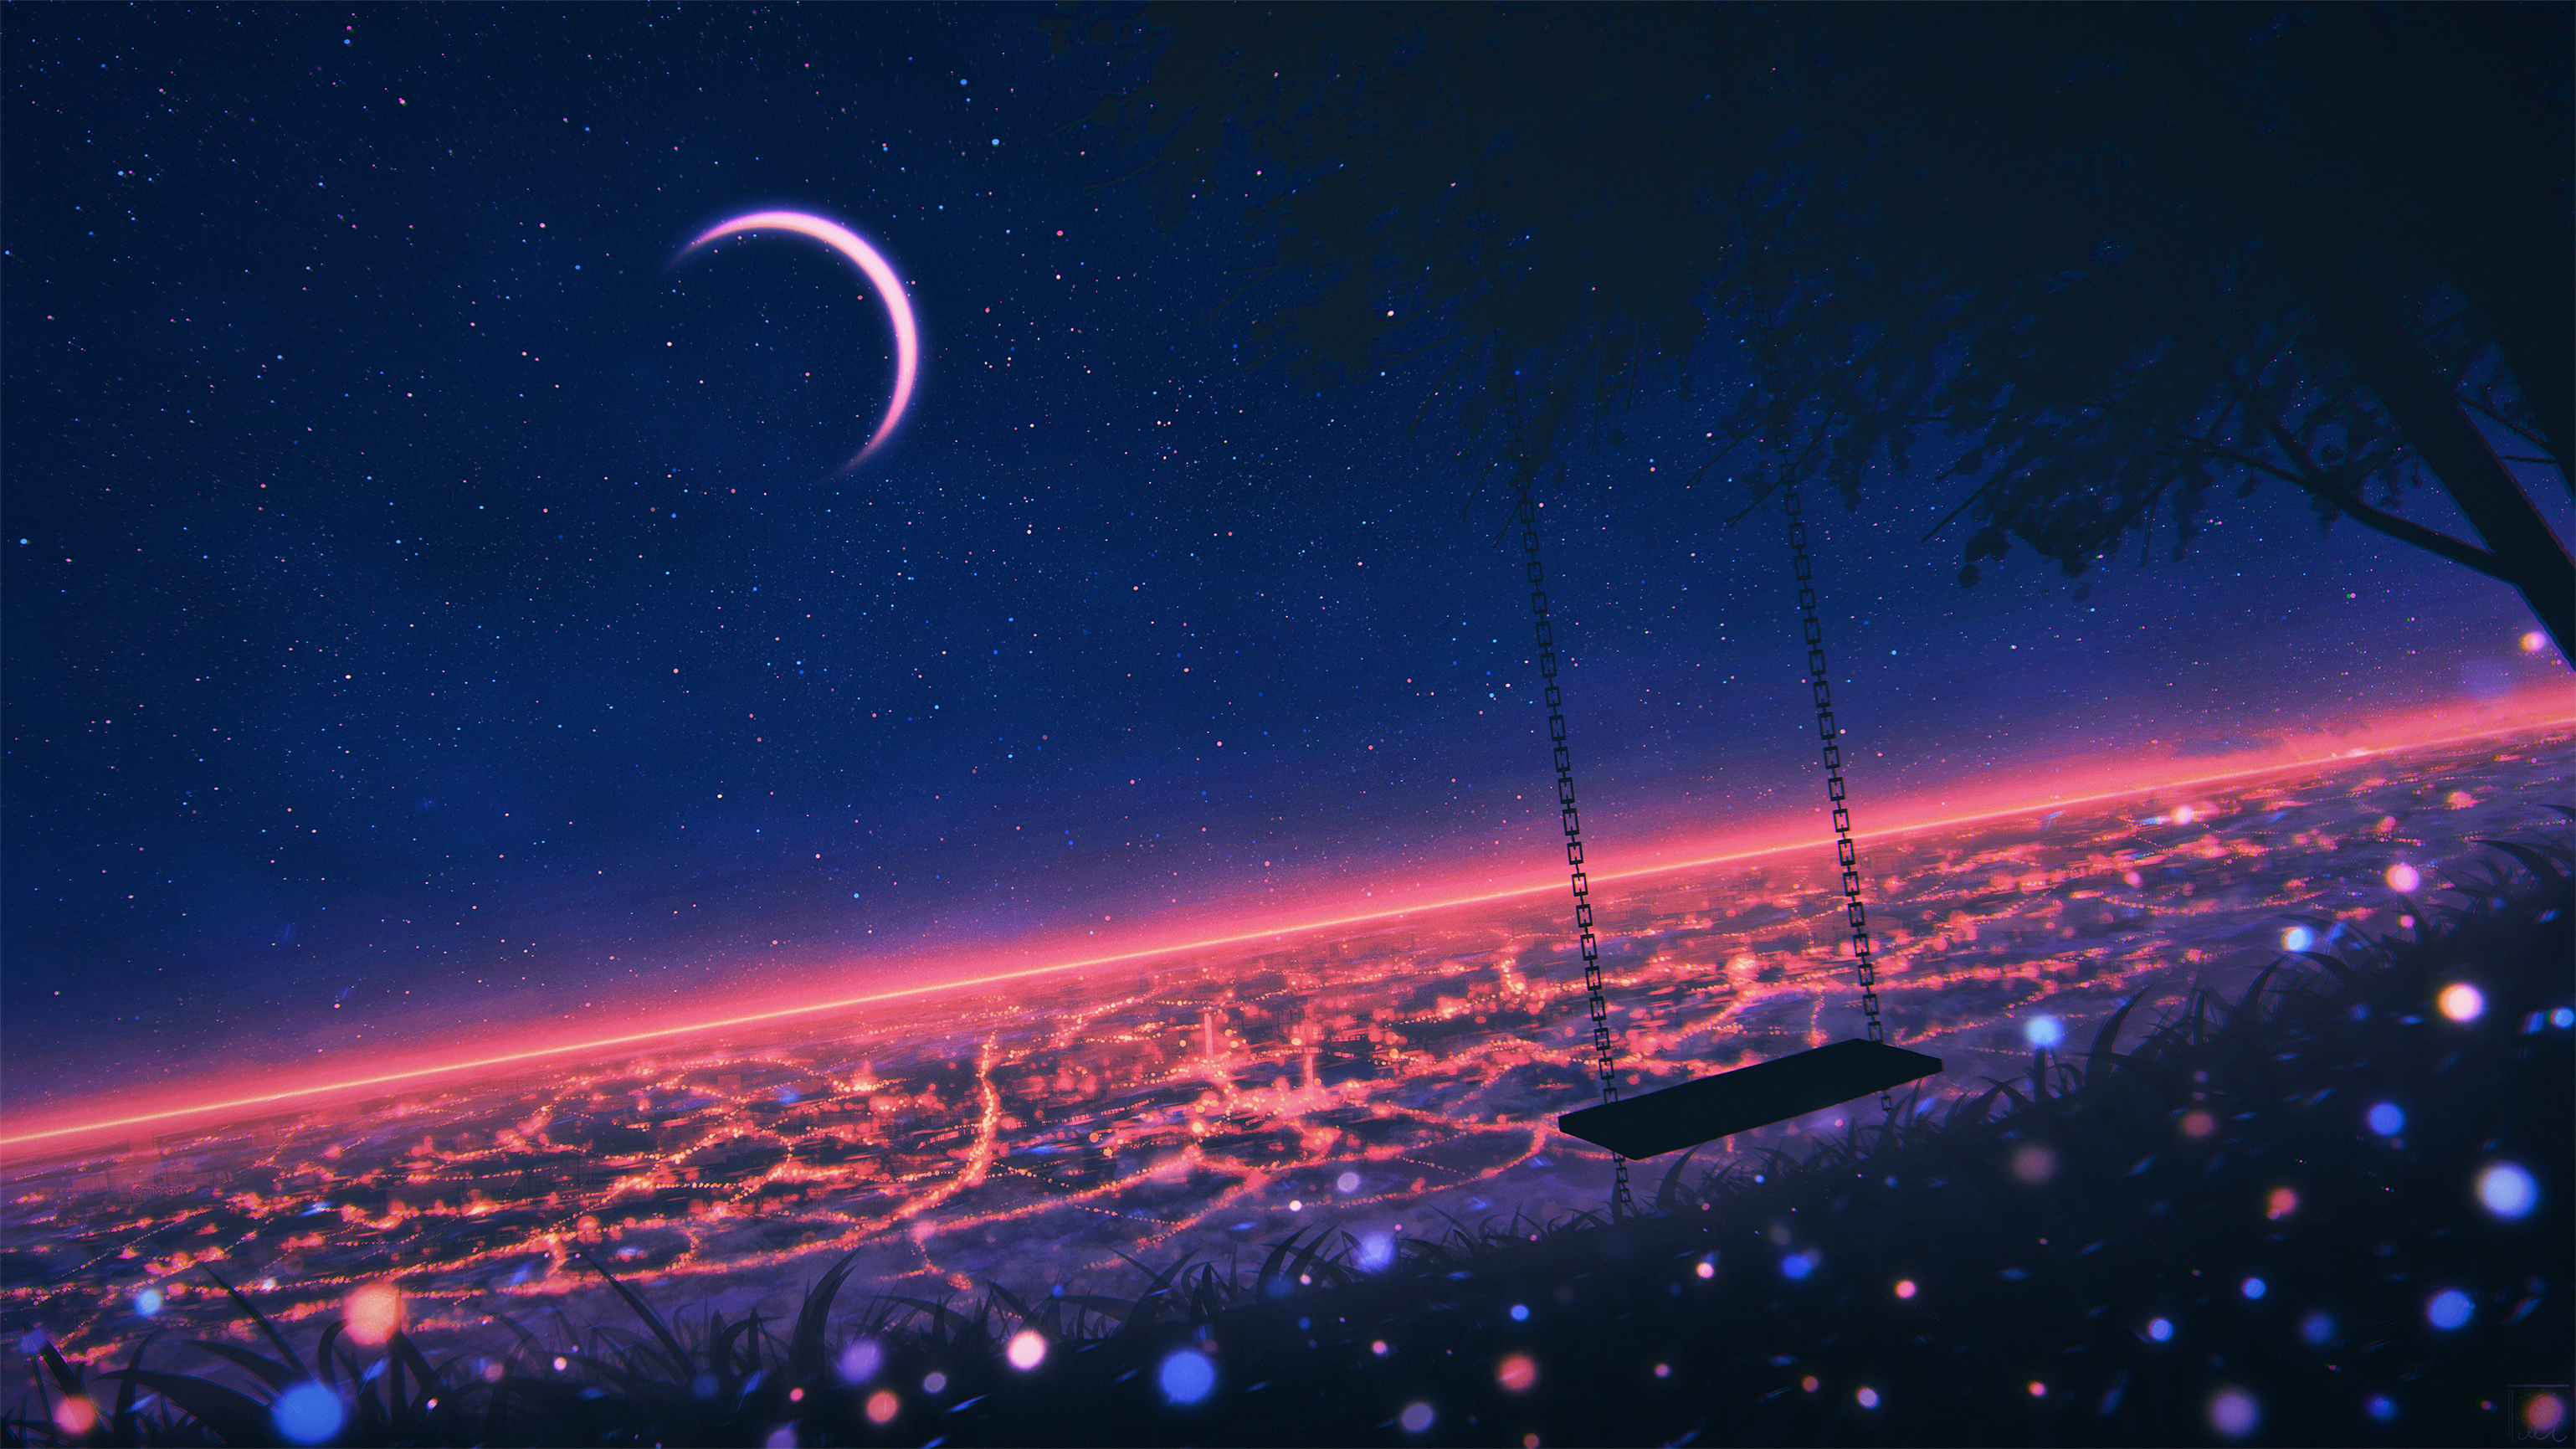 Anime 3078x1731 landscape artwork swings sky night Elizabeth Miloecute cityscape stars Moon